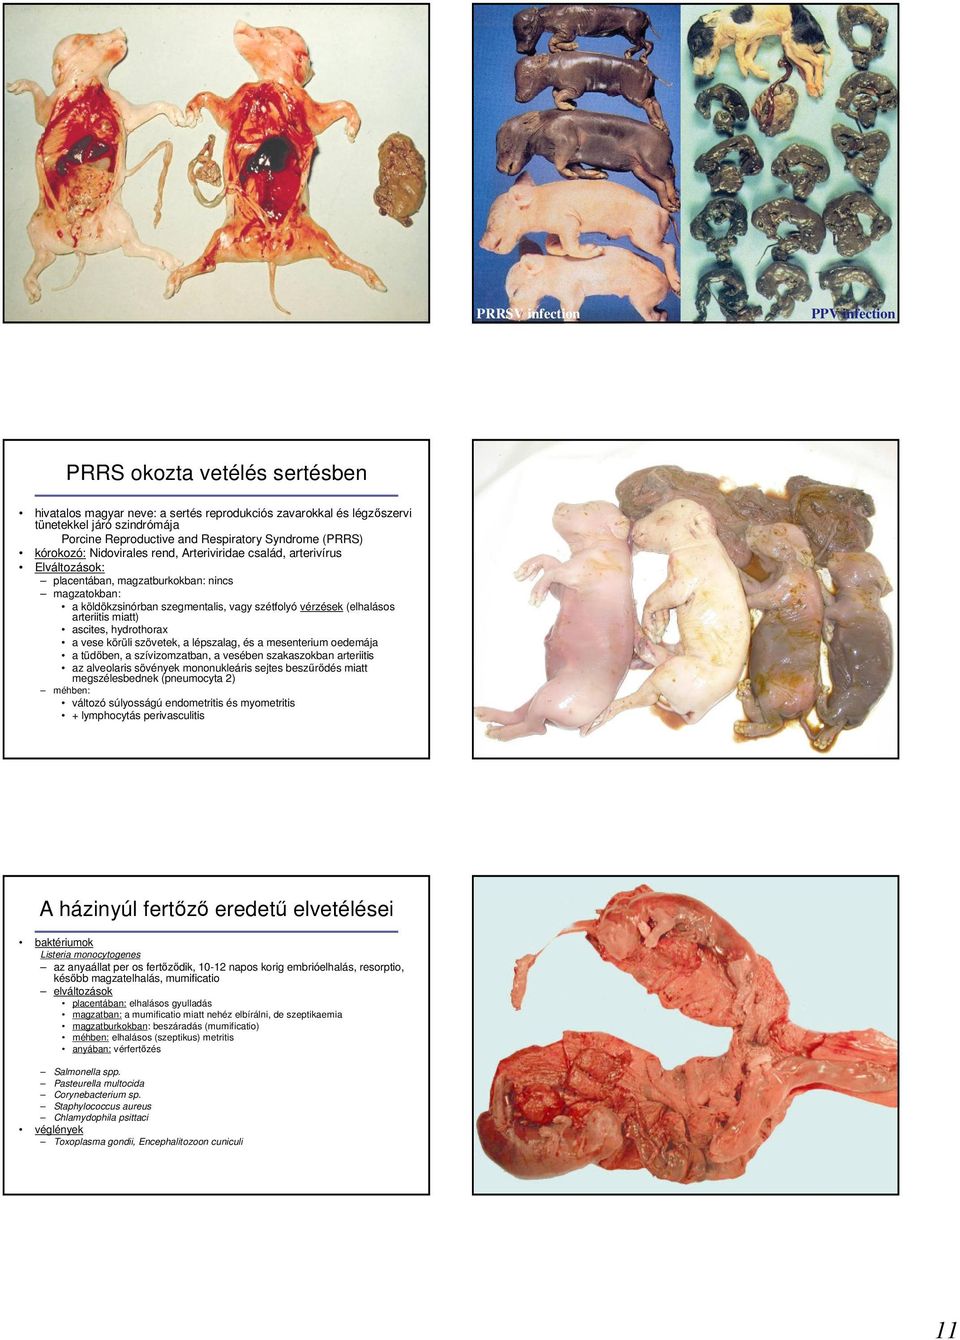 (elhalásos arteriitis miatt) ascites, hydrothorax a vese körüli szövetek, a lépszalag, és a mesenterium oedemája a tüdıben, a szívizomzatban, a vesében szakaszokban arteriitis az alveolaris sövények